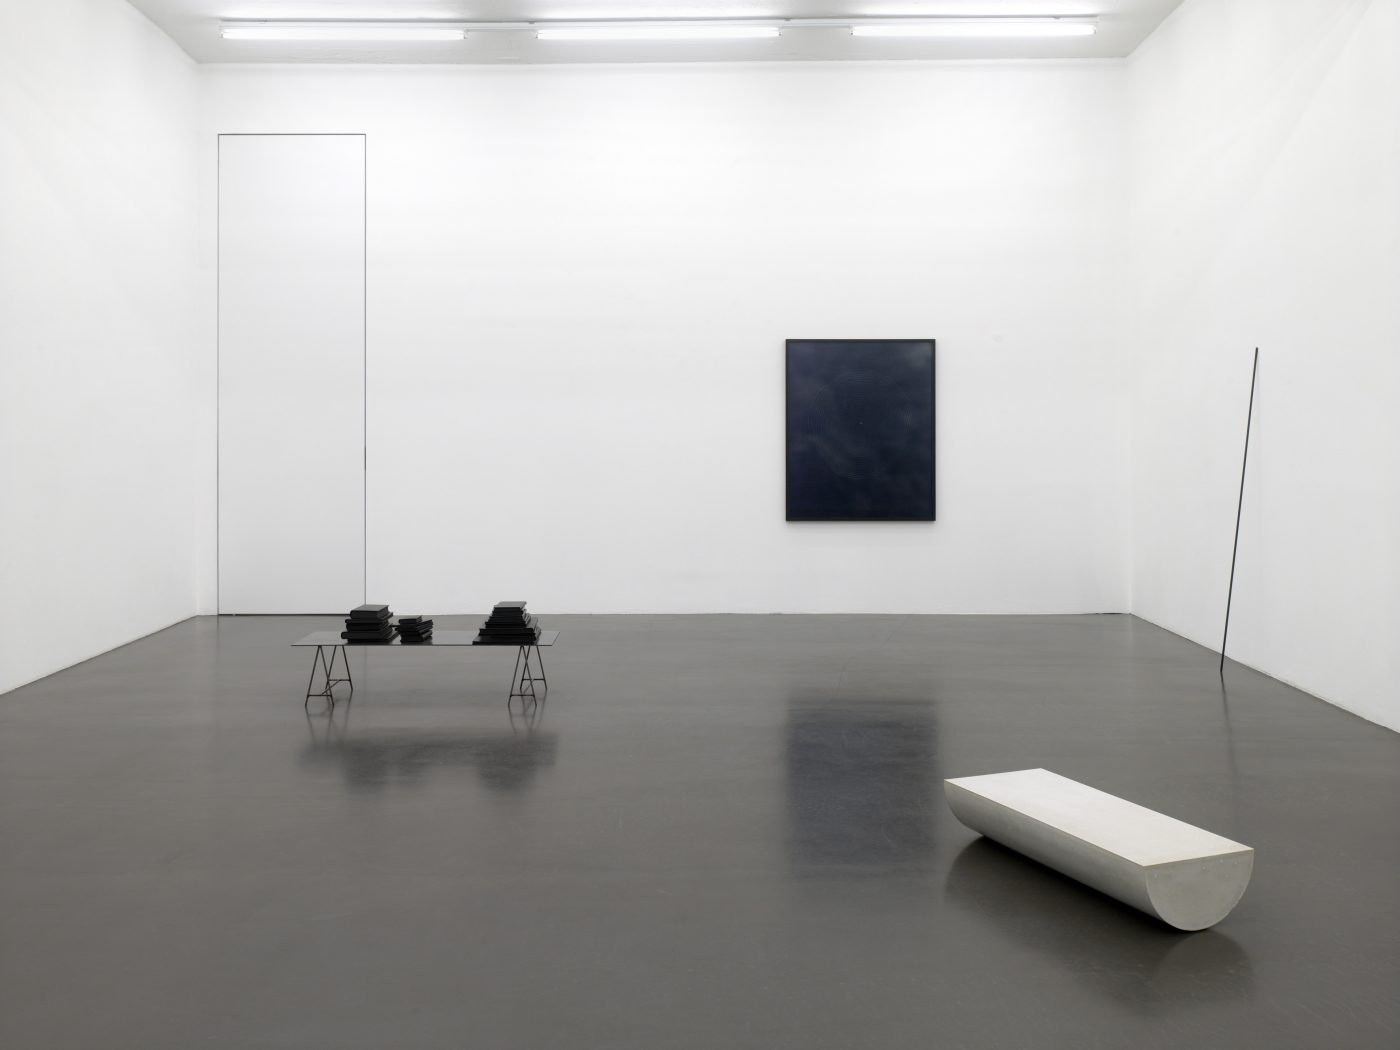 Daniel Gustav Cramer, Fifteen Works, 2014. Sies + Hoeke Gallery, Duesseldorf, Germany
